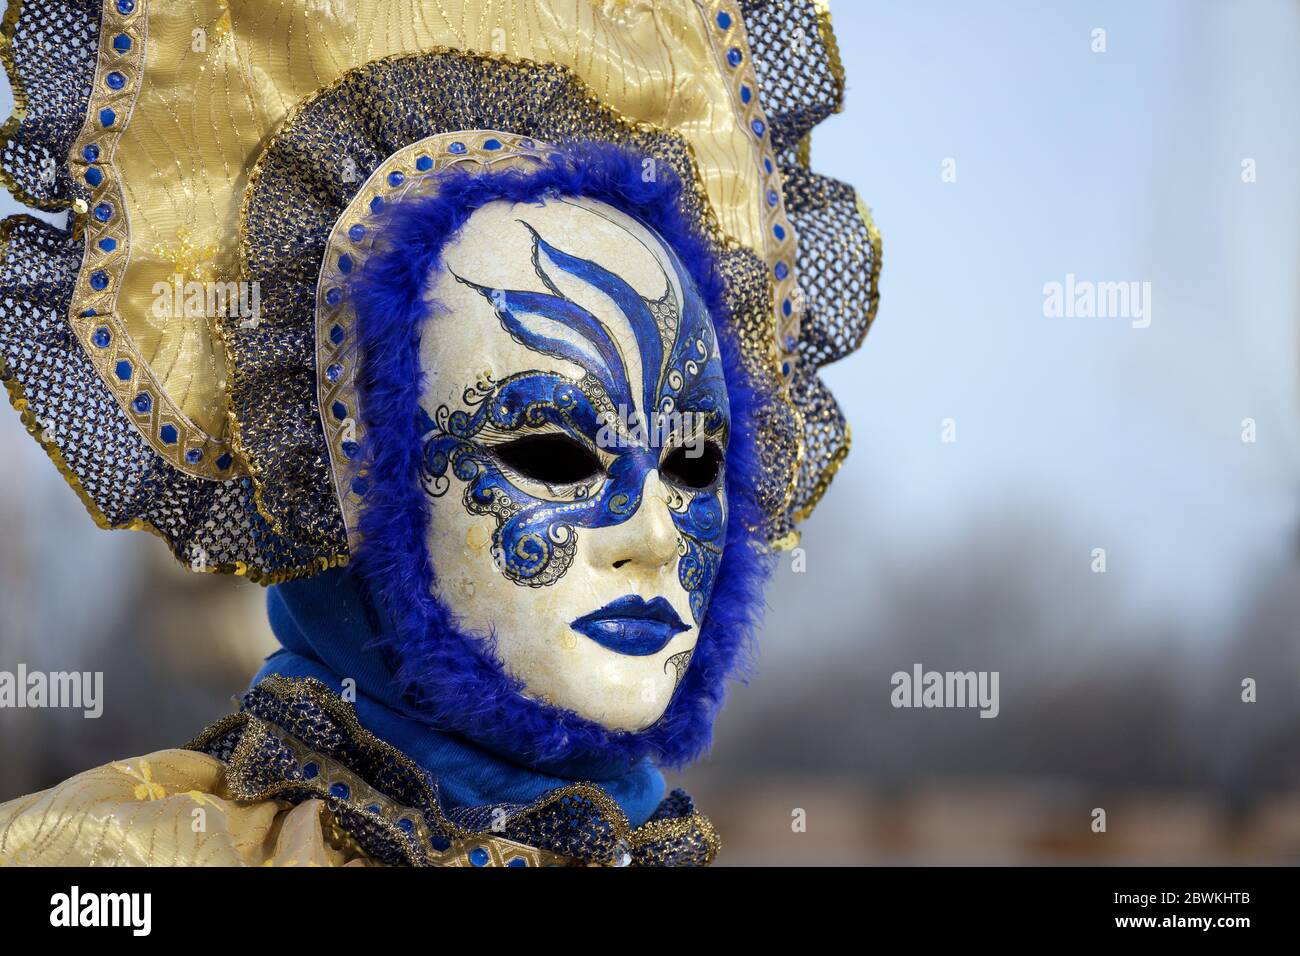 Hamburg, 08. Februar 2020: Frauenmaske auf der Faschingsfeier Maskenzauber, das heißt Zaubermasken, ein Straßenfest in Hamburg auf der Stockfoto